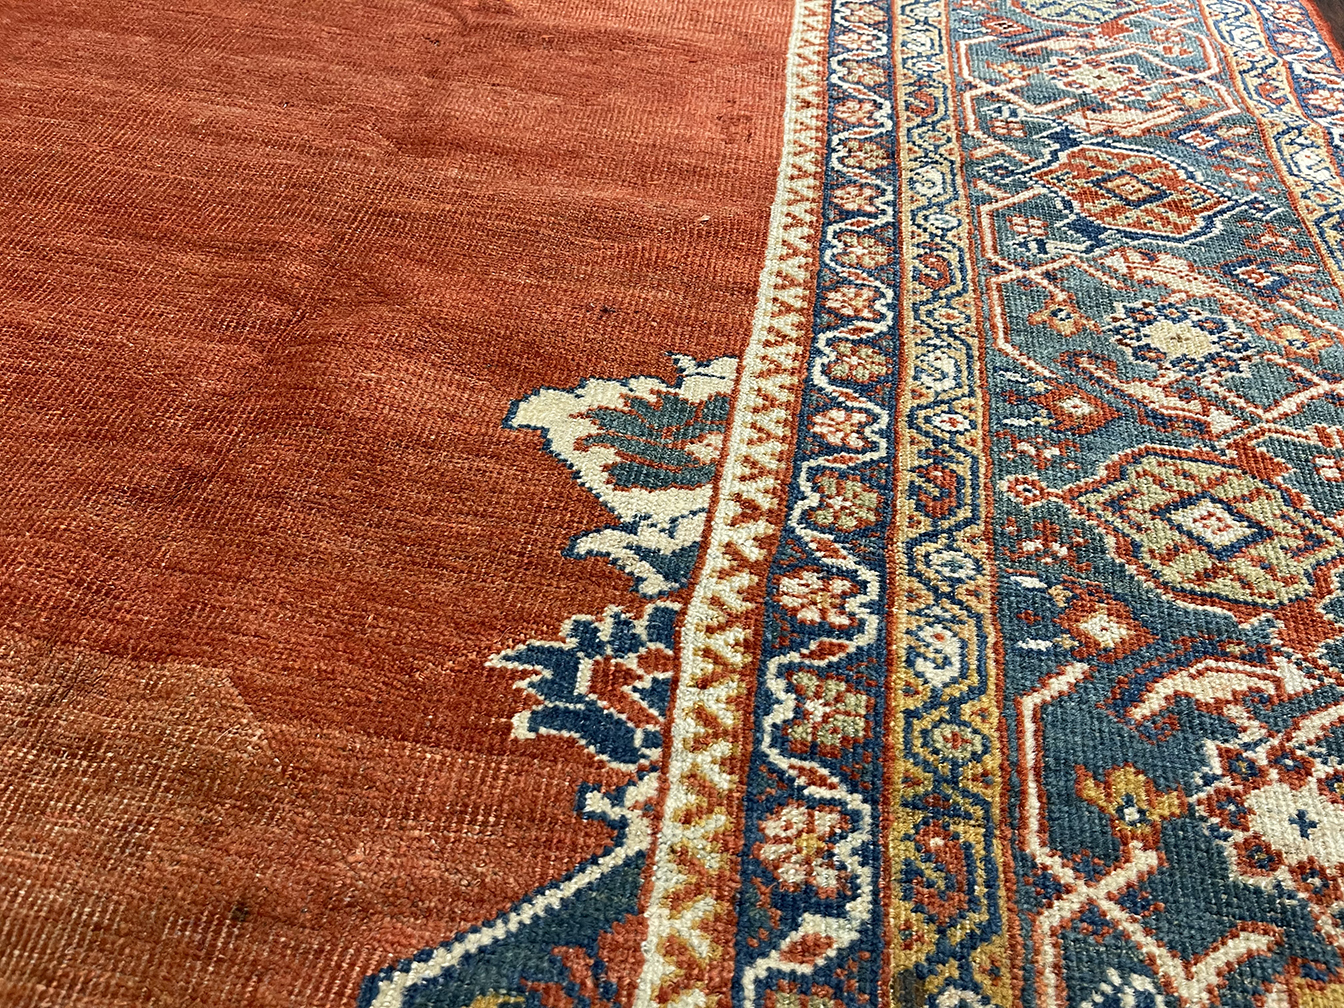 Antique sultan abad Carpet - # 56457